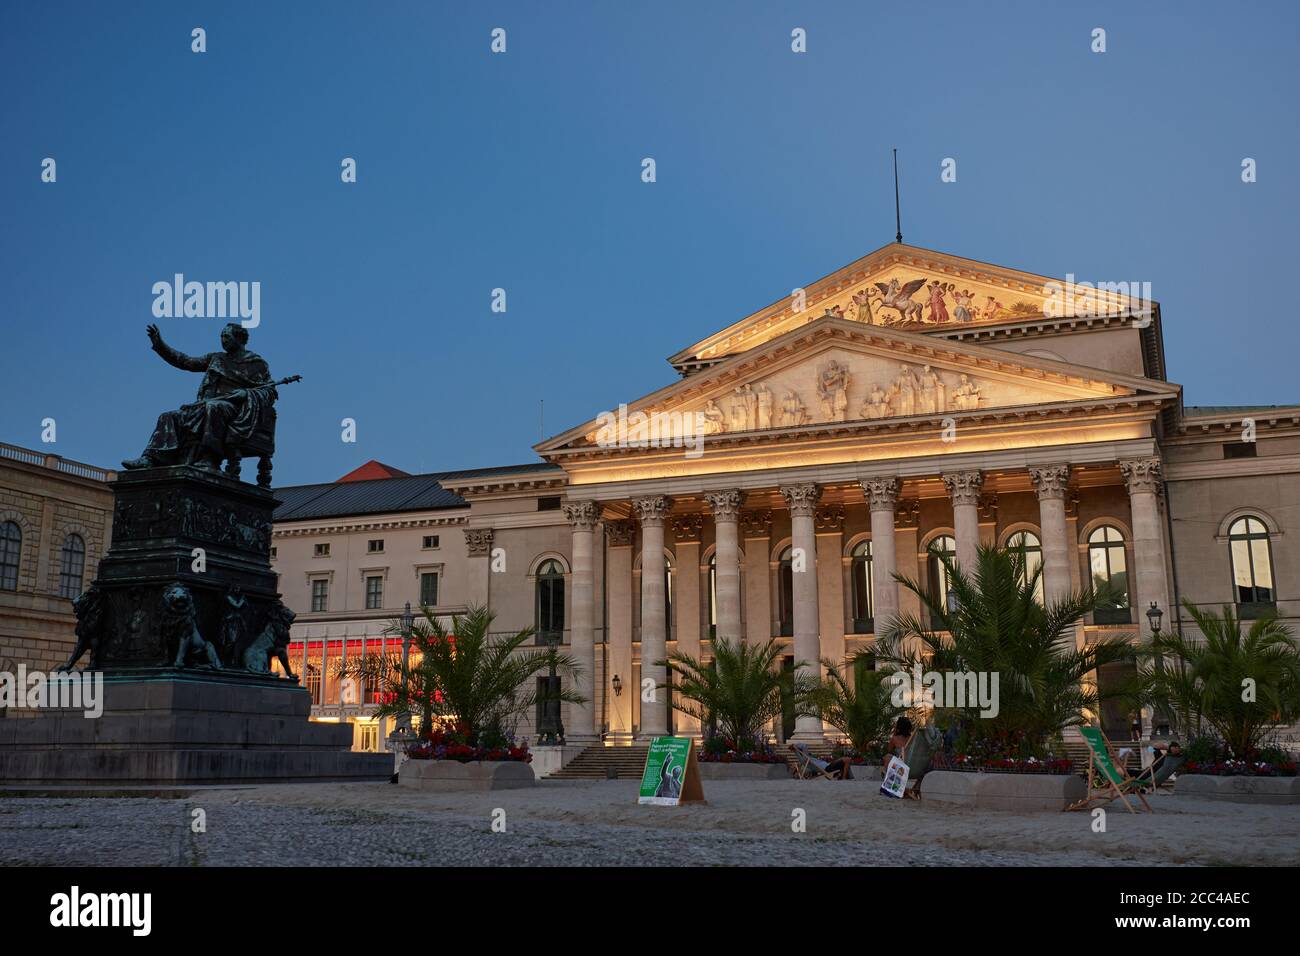 München, Deutschland - 9. August 2020: Ein temporärer Palmenstrand wurde vor das Nationaltheater in München gebracht, um "Sommer in der Stadt" zu feiern Stockfoto